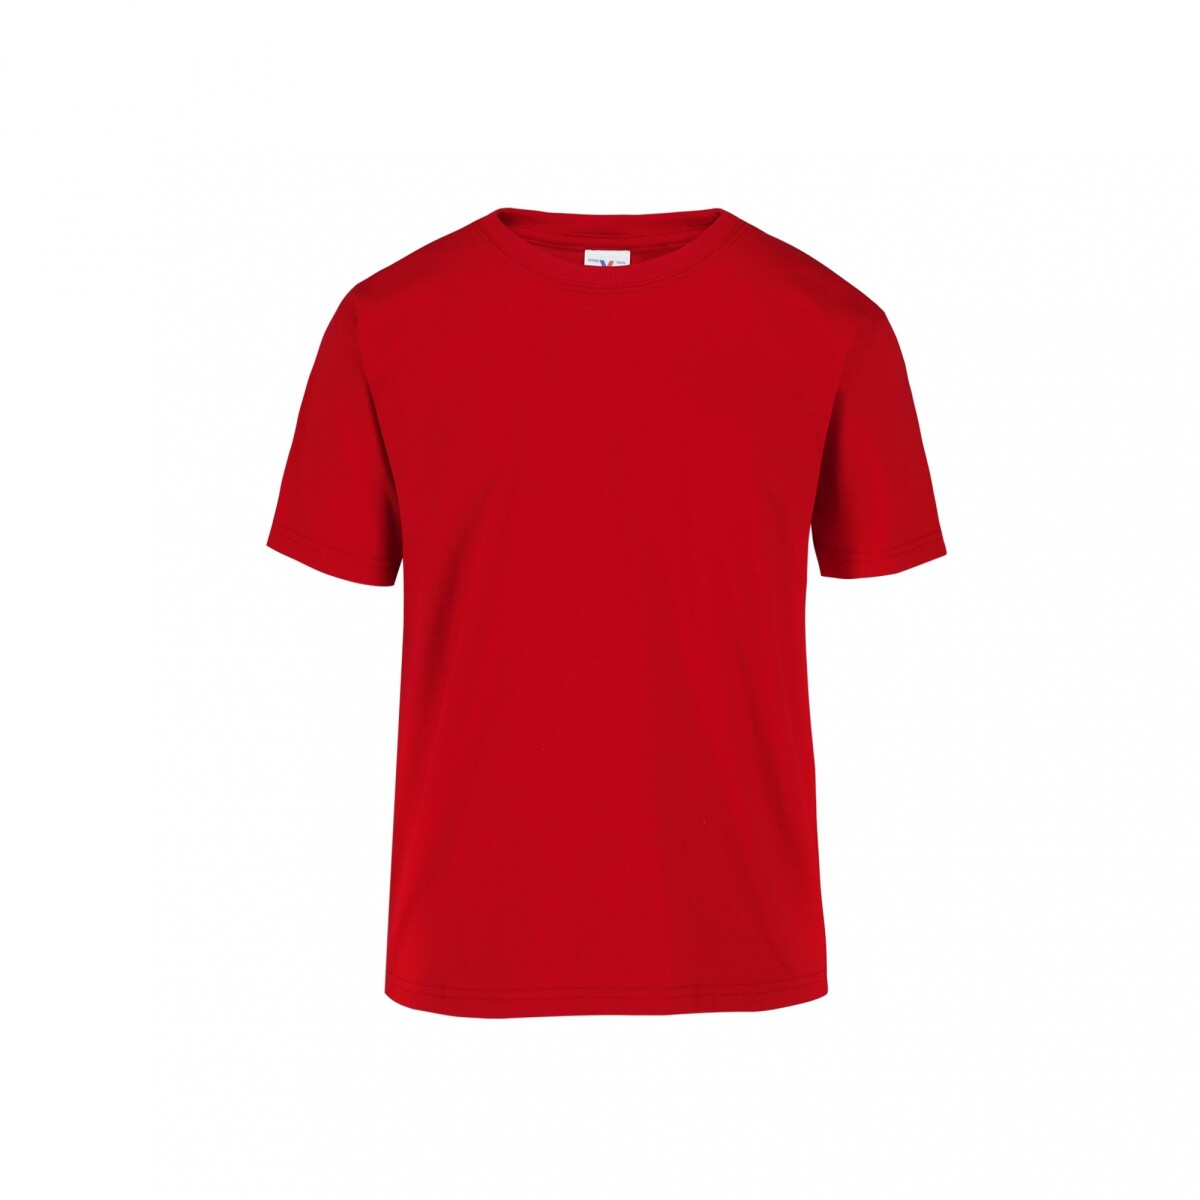 Camiseta a la base niño - Rojo 